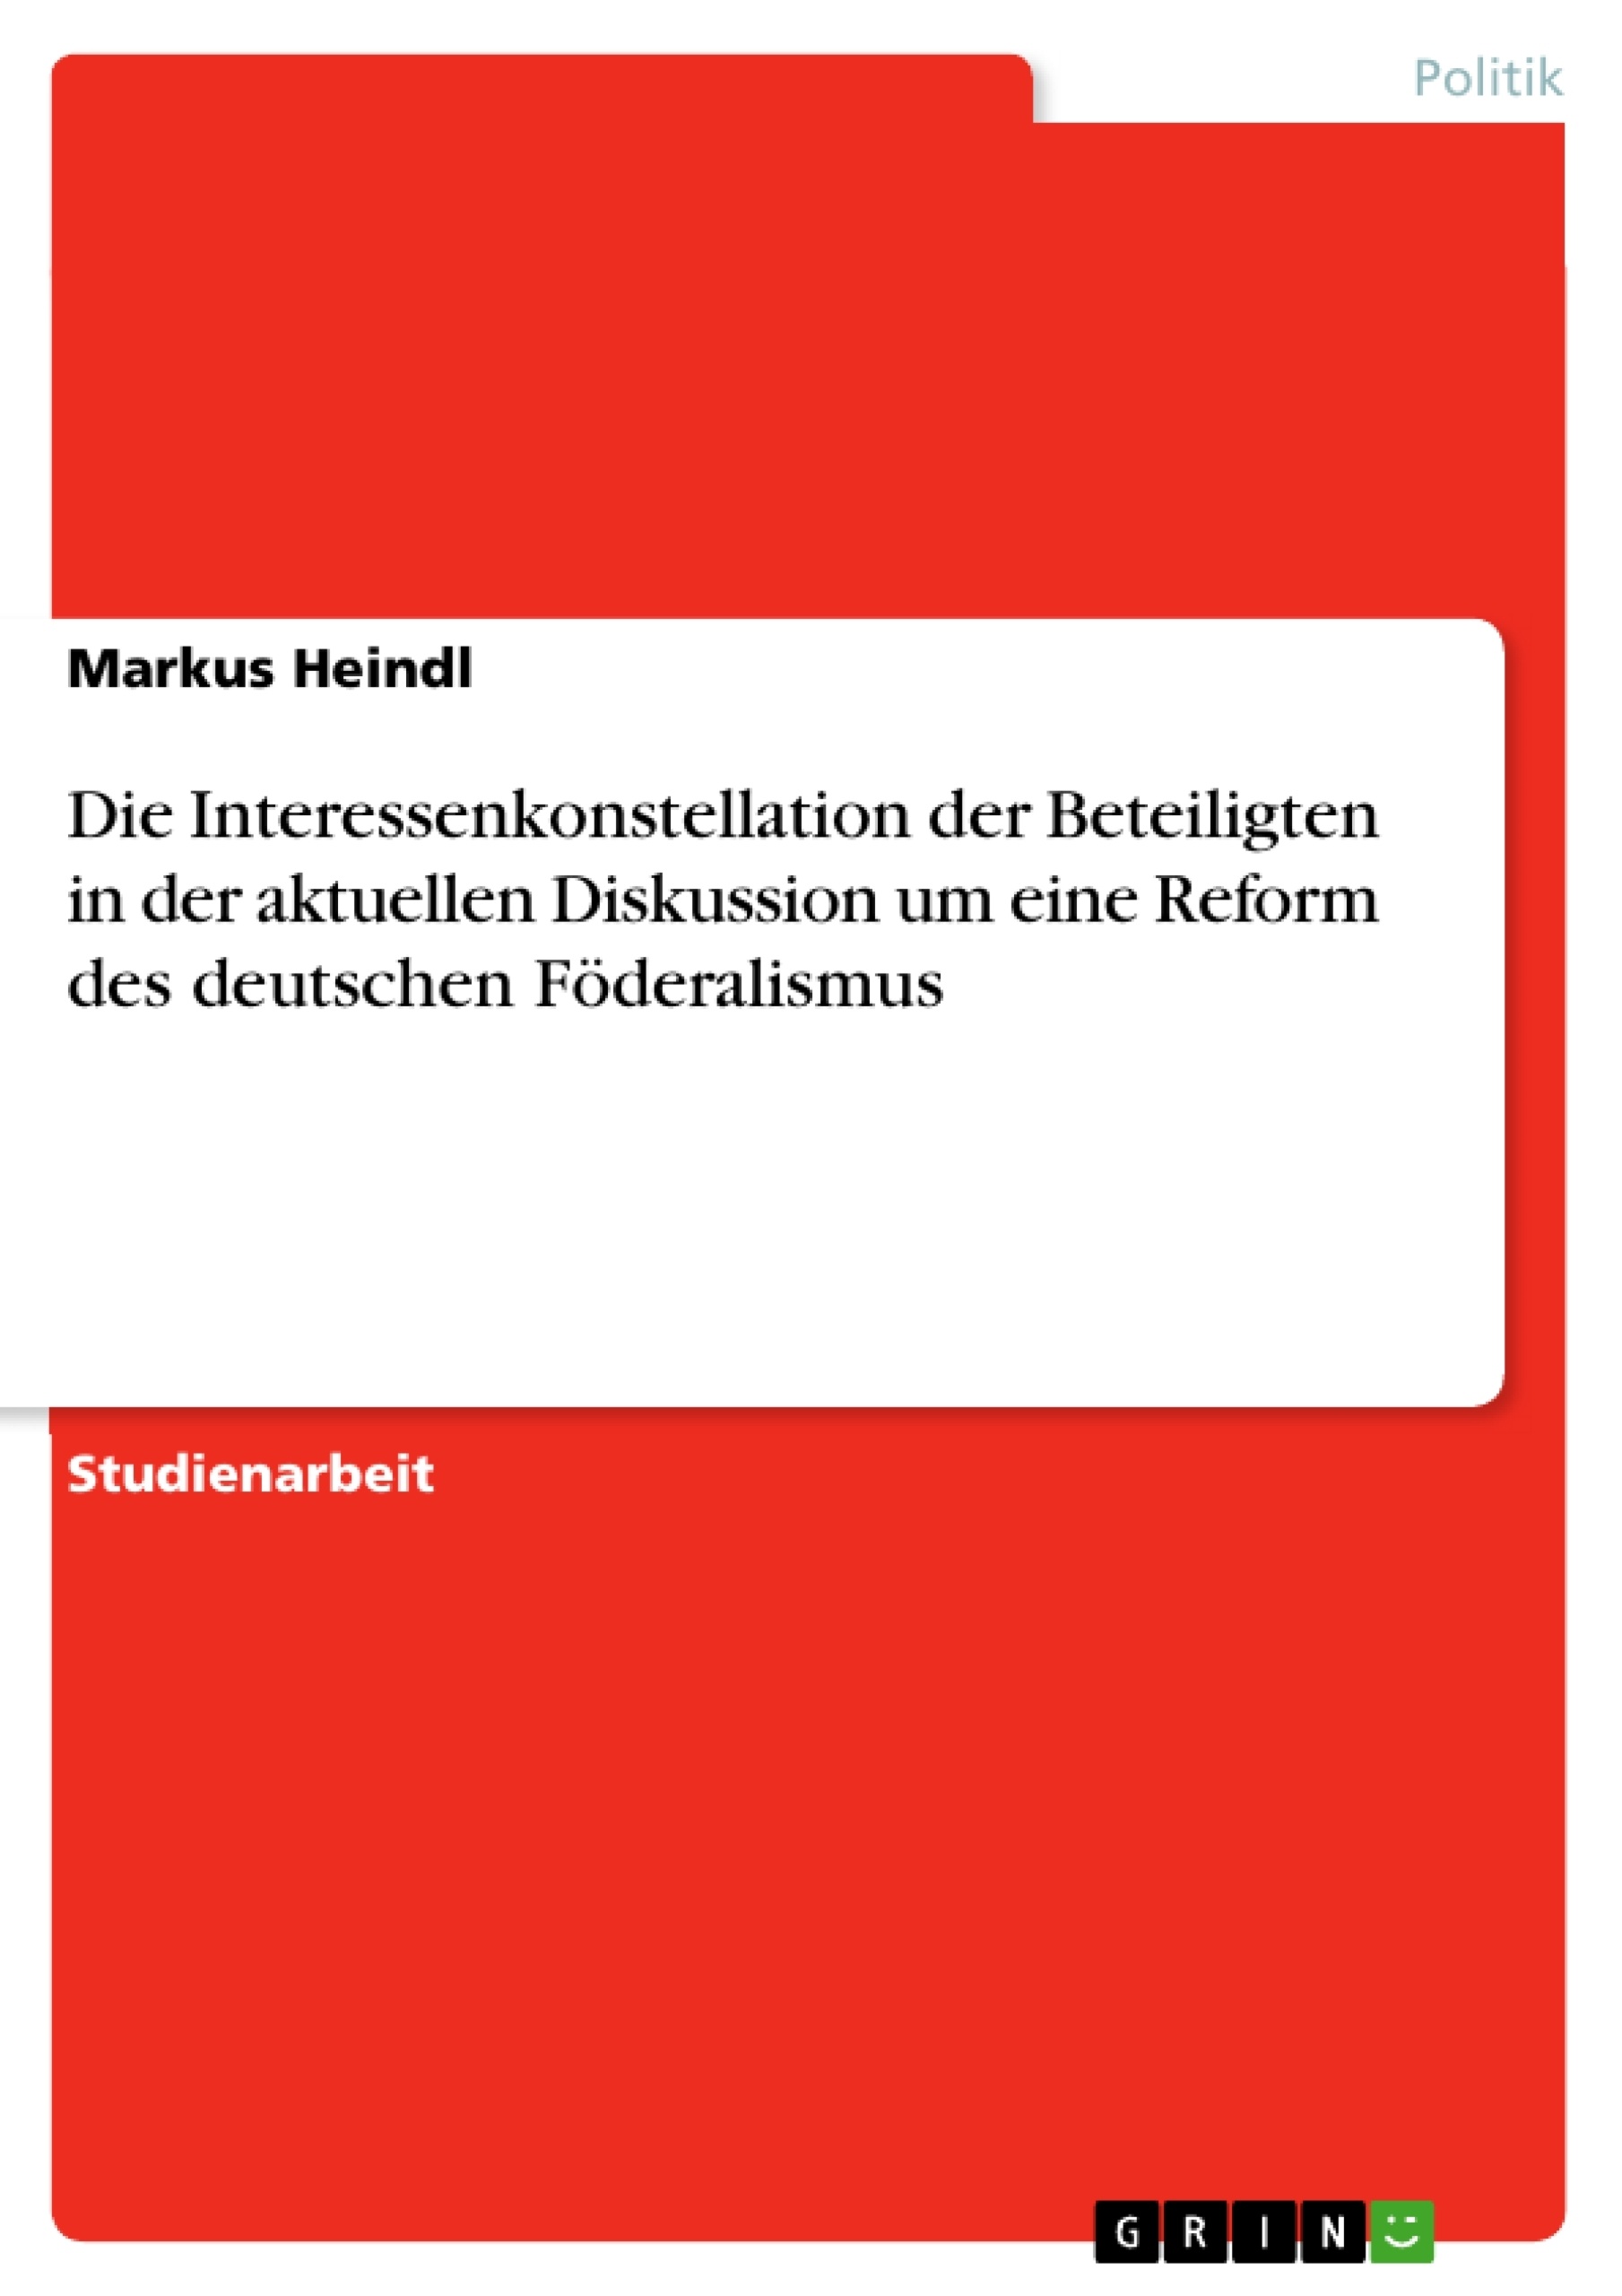 Title: Die Interessenkonstellation der Beteiligten in der aktuellen Diskussion um eine Reform des deutschen Föderalismus